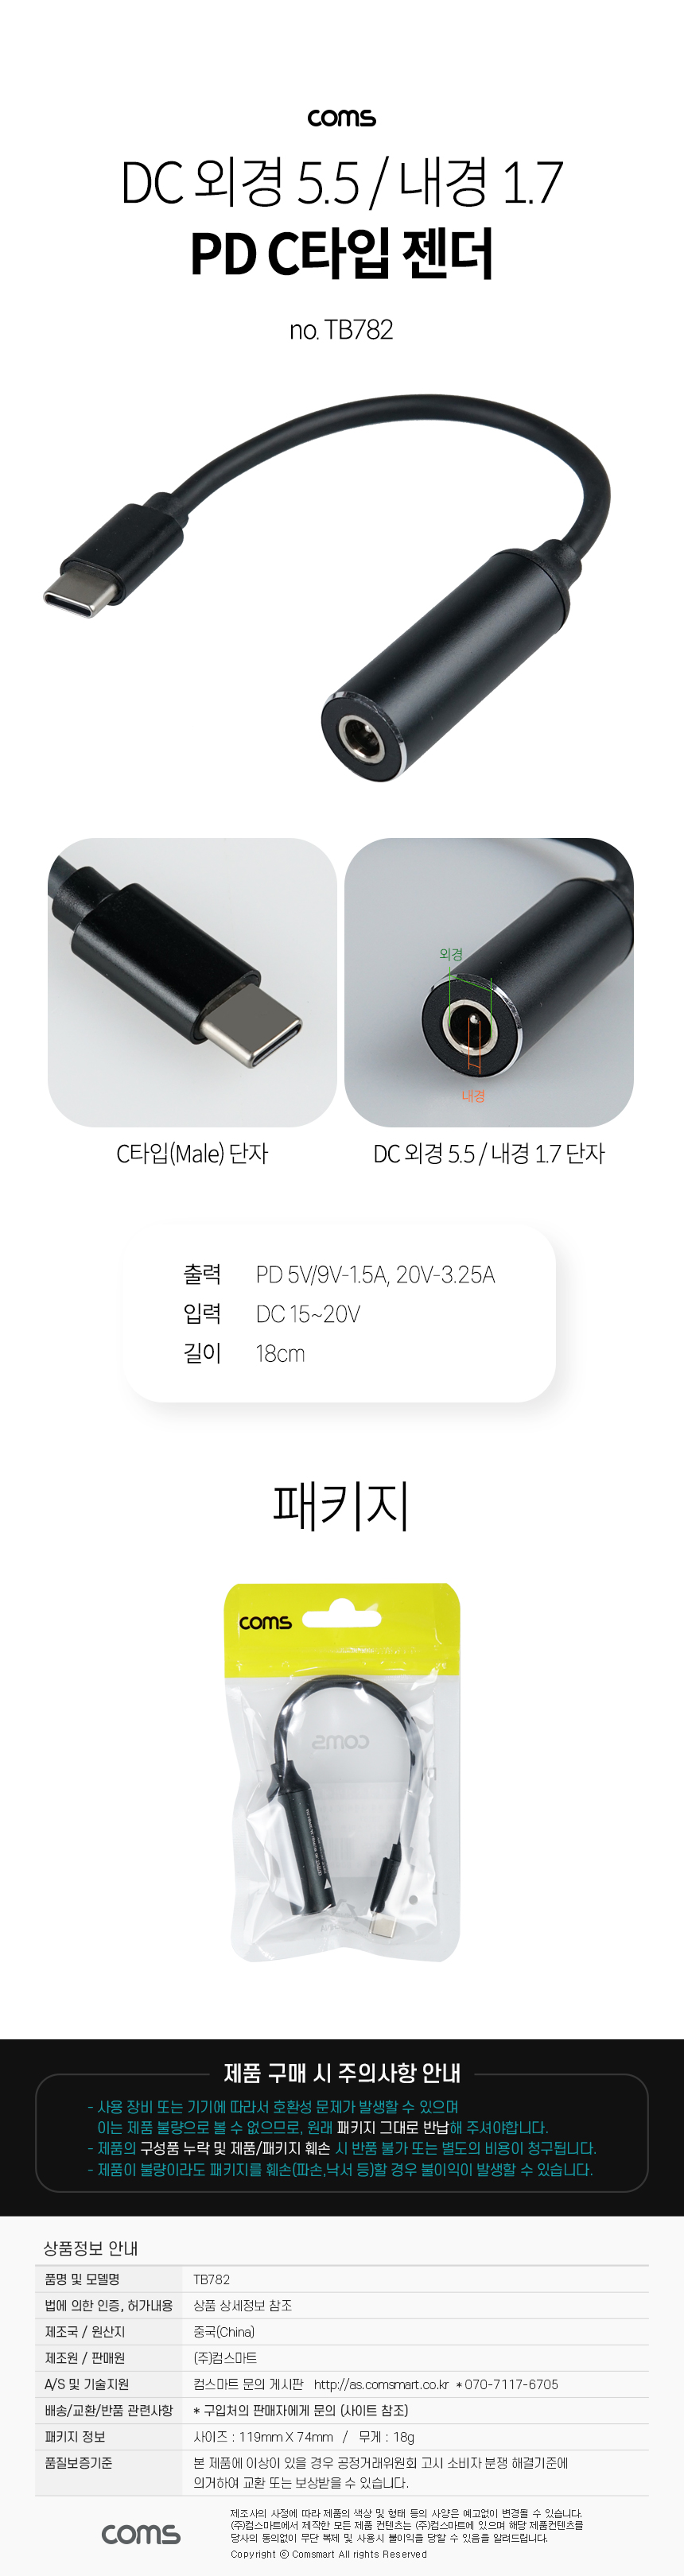 USB Type C PD 노트북 전원 변환 충전 케이블 DC 외경 5.5 내경 1.7 C타입 18cm